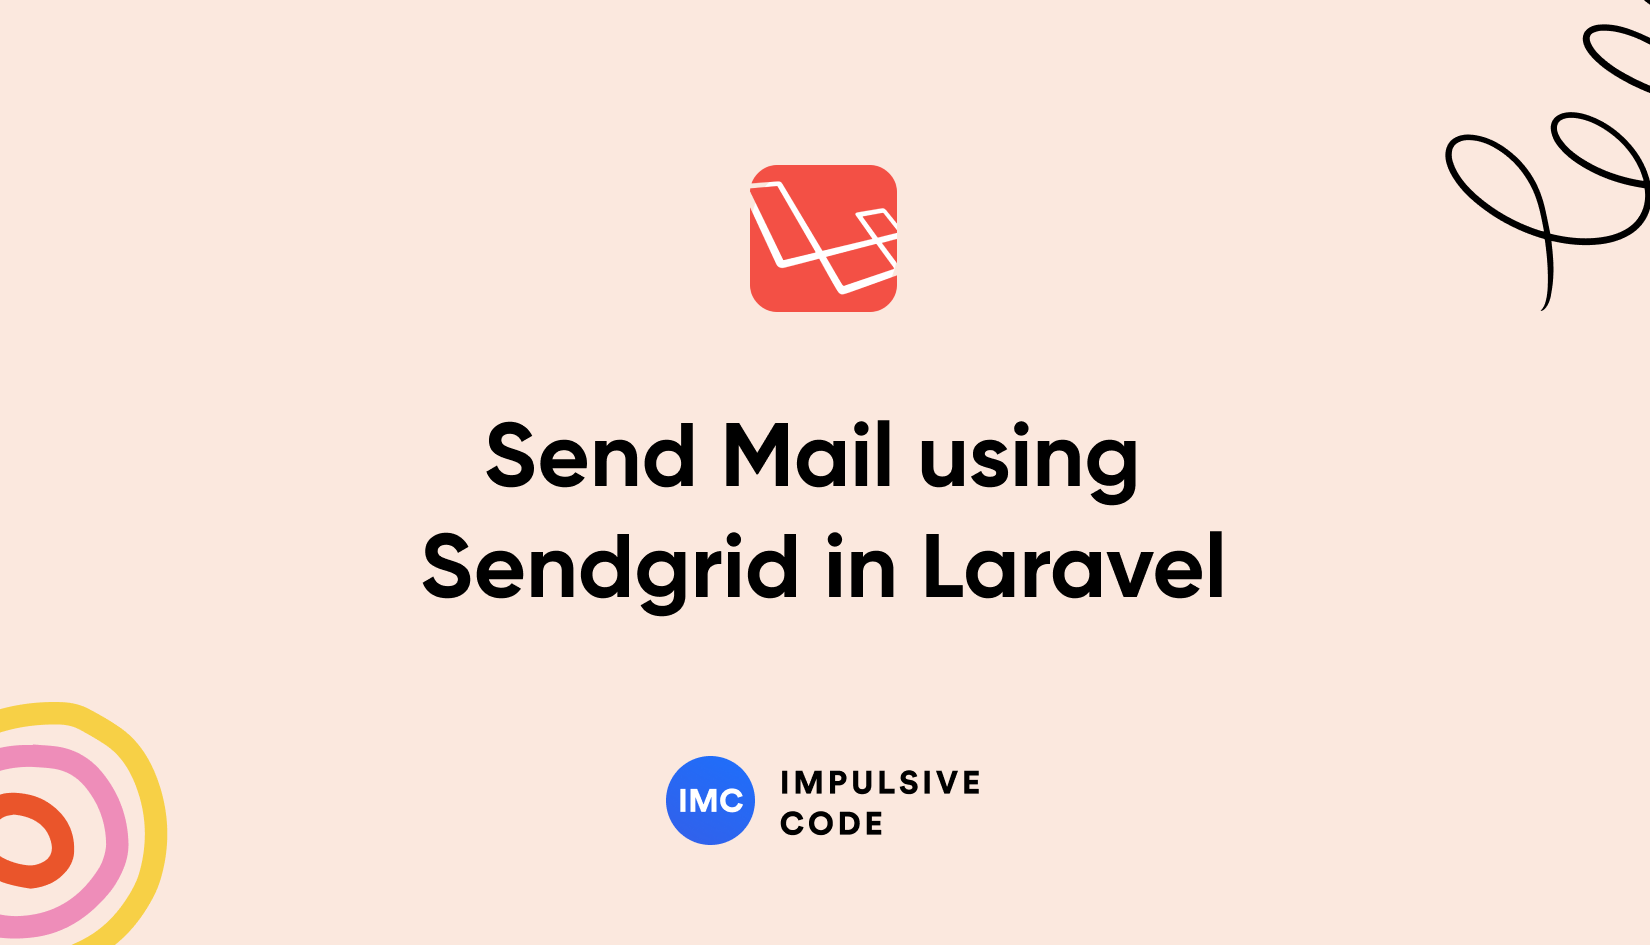 How to Send Mail using Sendgrid in Laravel?